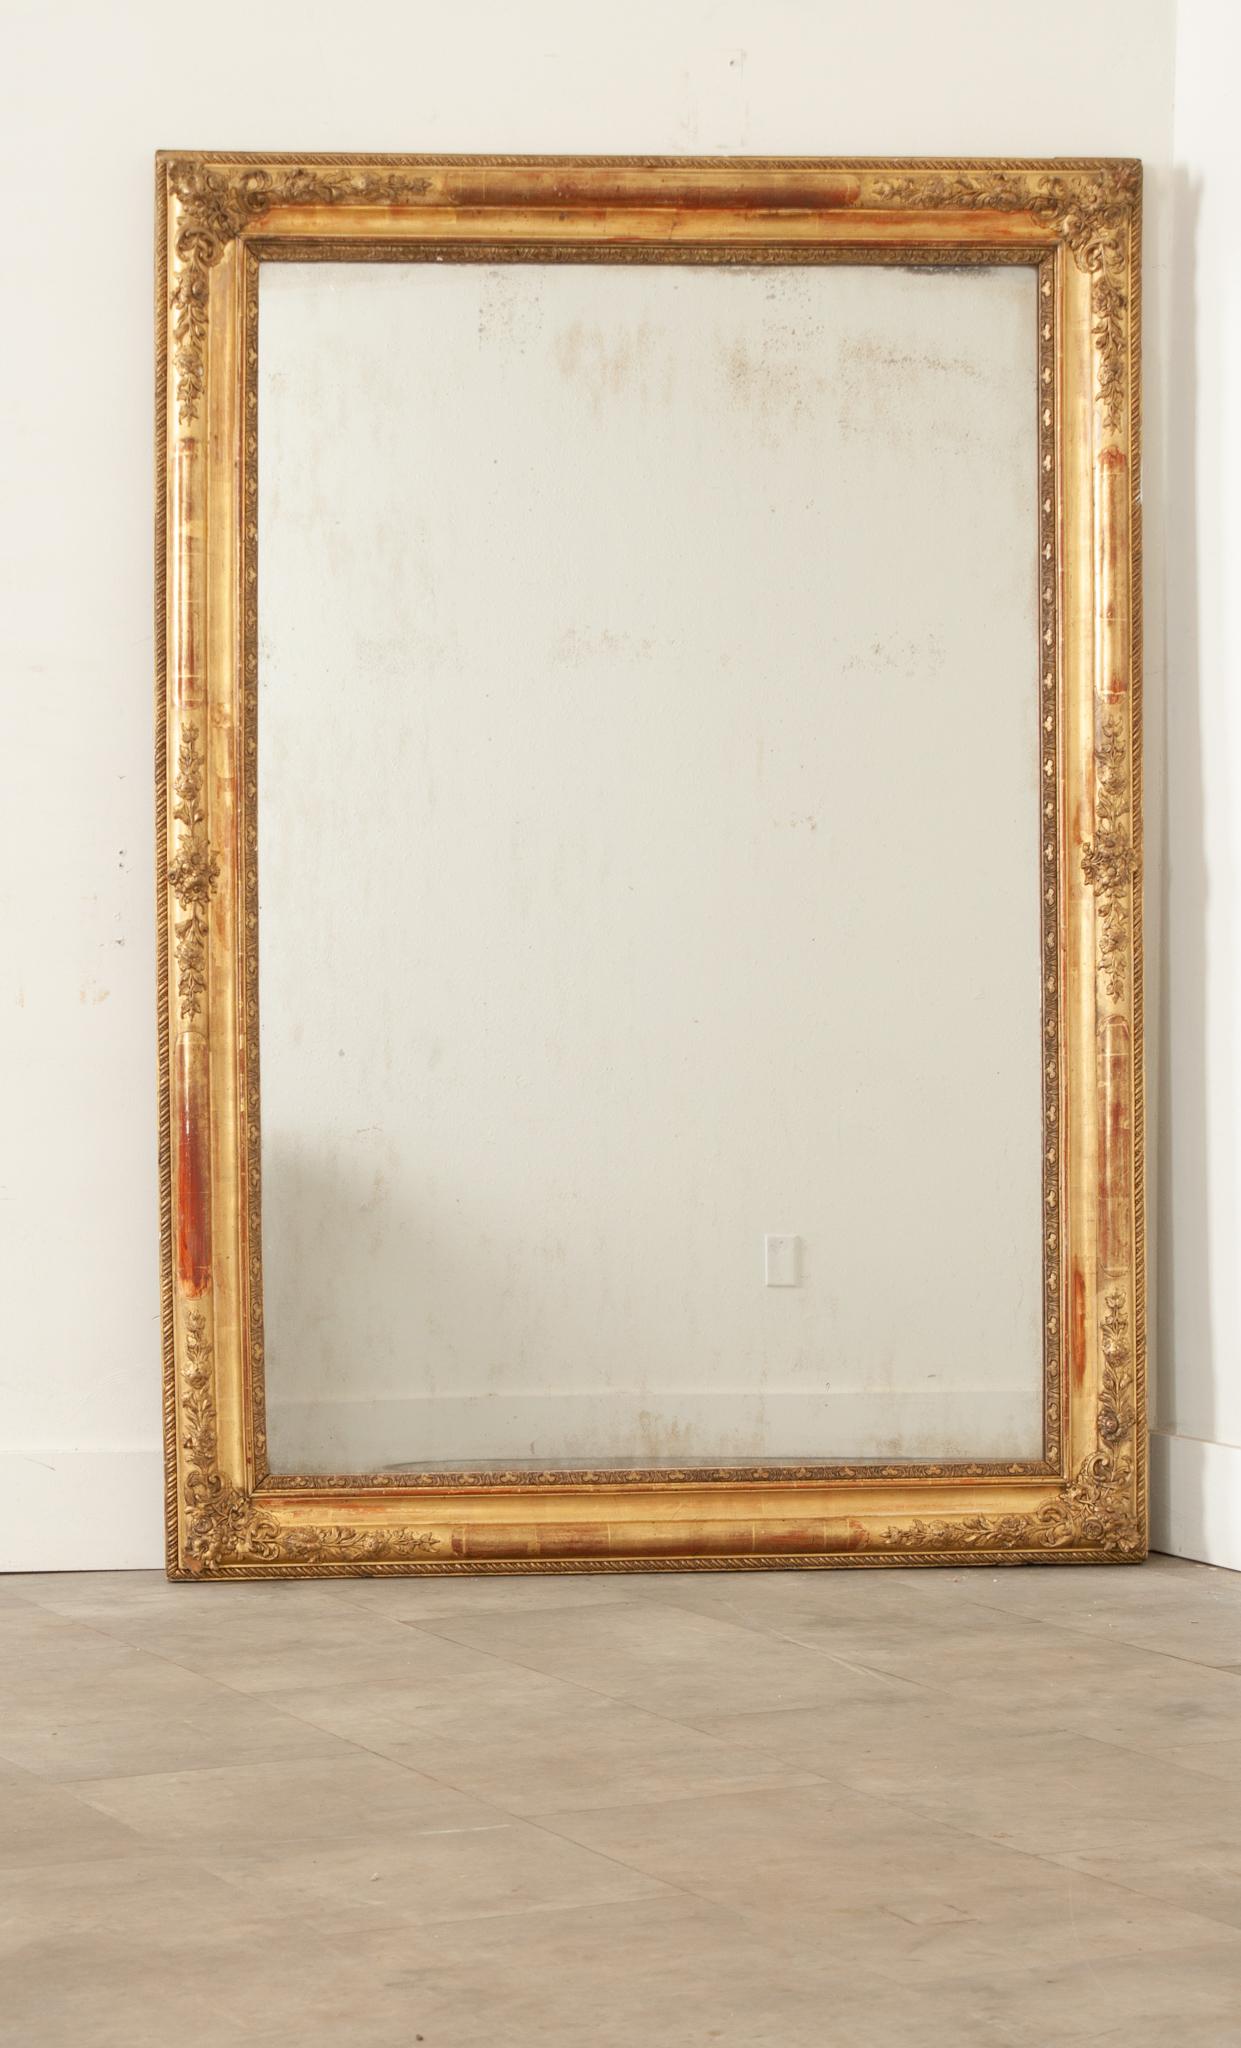 Miroir français du 19e siècle à encadrement doré. Le miroir d'origine est fixé dans un cadre sculpté et moulé sur les quatre côtés avec des motifs répétitifs et des accents floraux. Quelques rousseurs sont visibles à l'intérieur de la plaque de